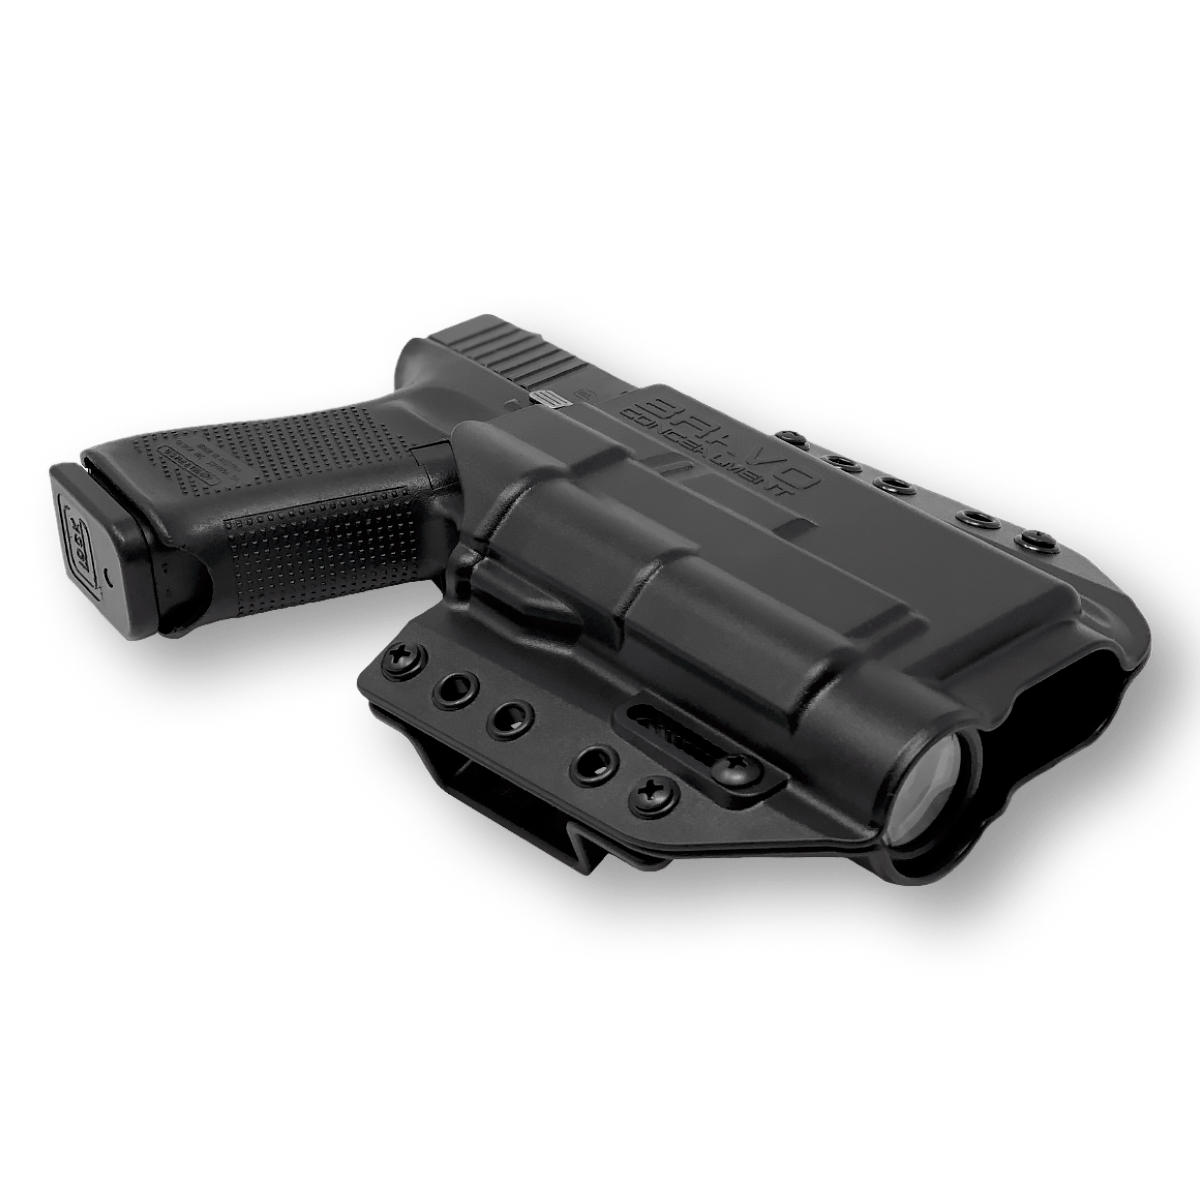 OWB Concealment Holster for Glock 17 Gen 5 Streamlight TLR1 HL Bravo